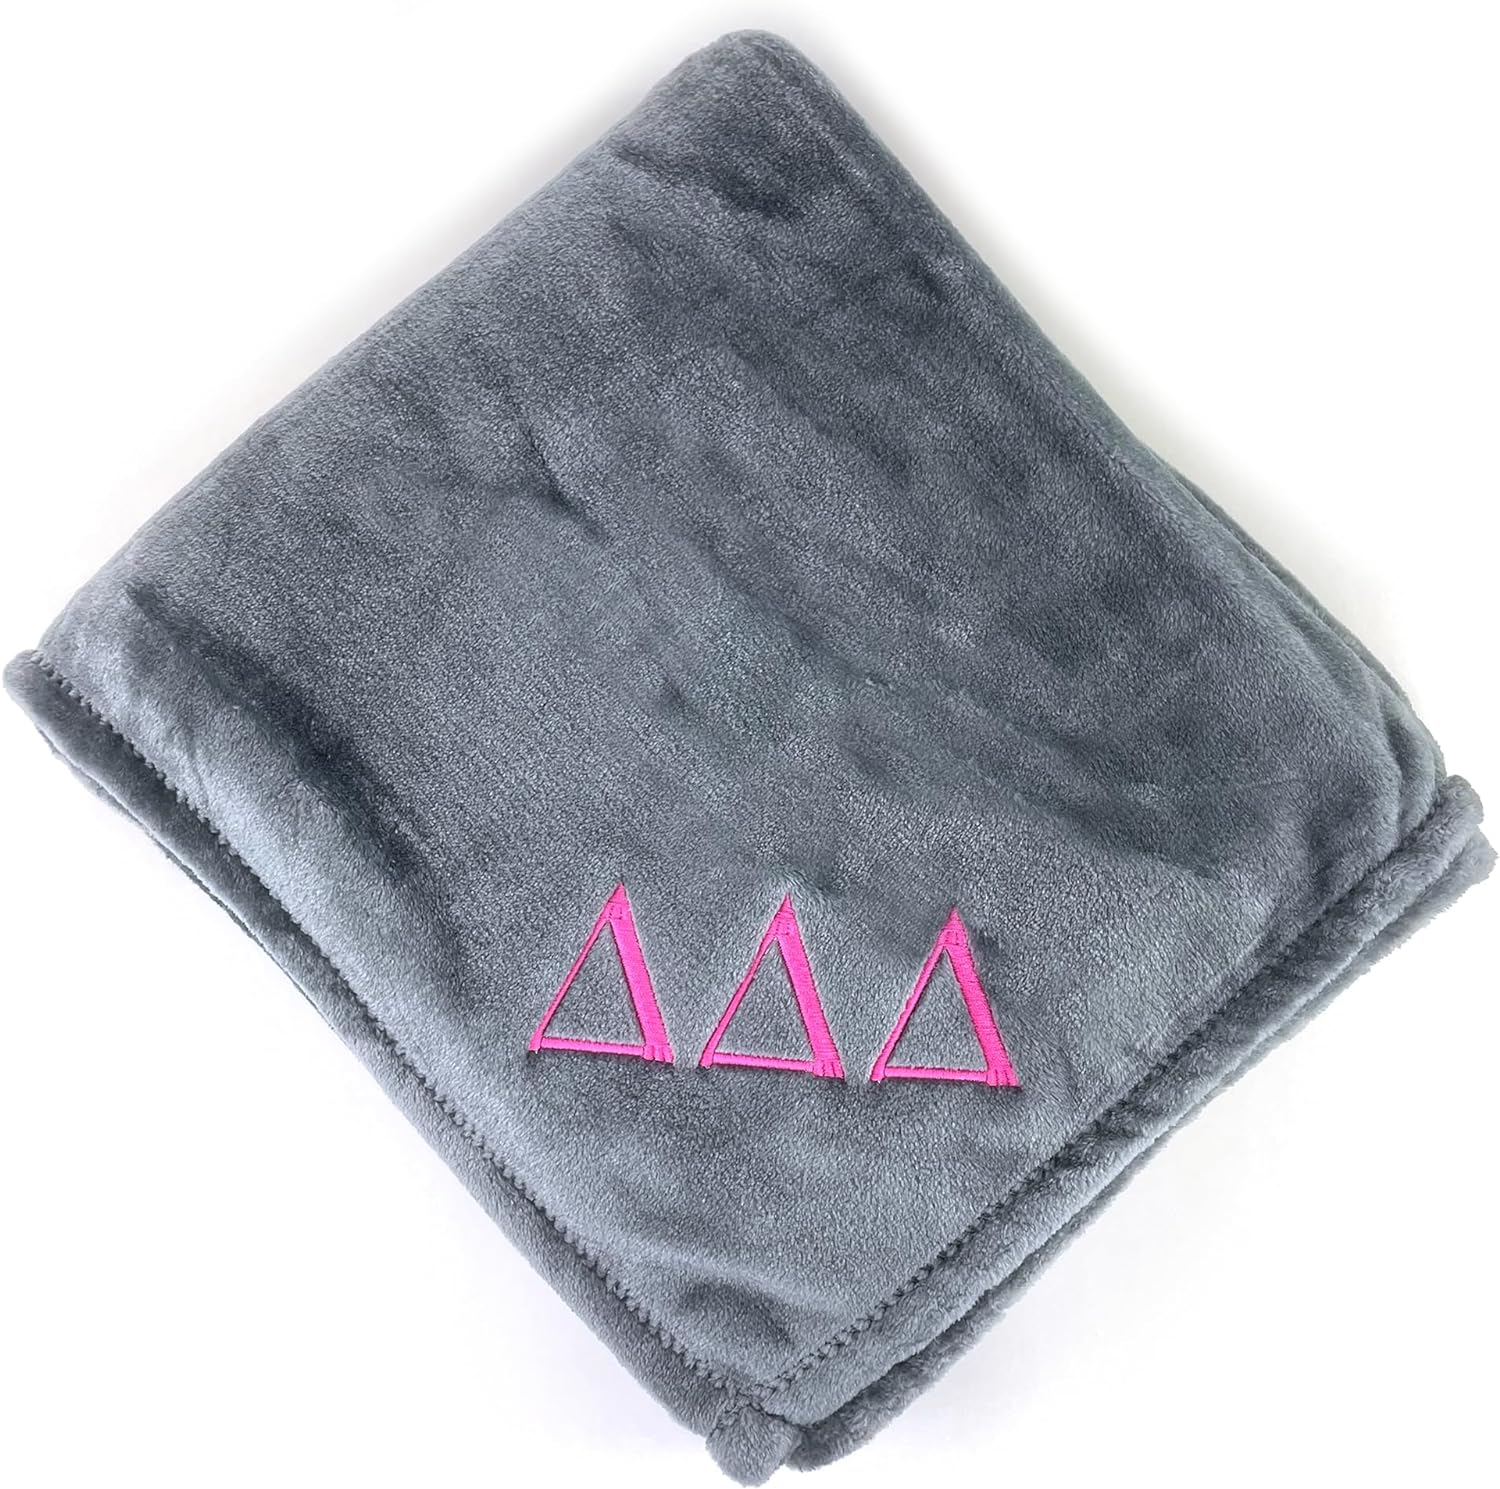 Delta Delta Delta Plush Throw Blanket - Gray/Pink